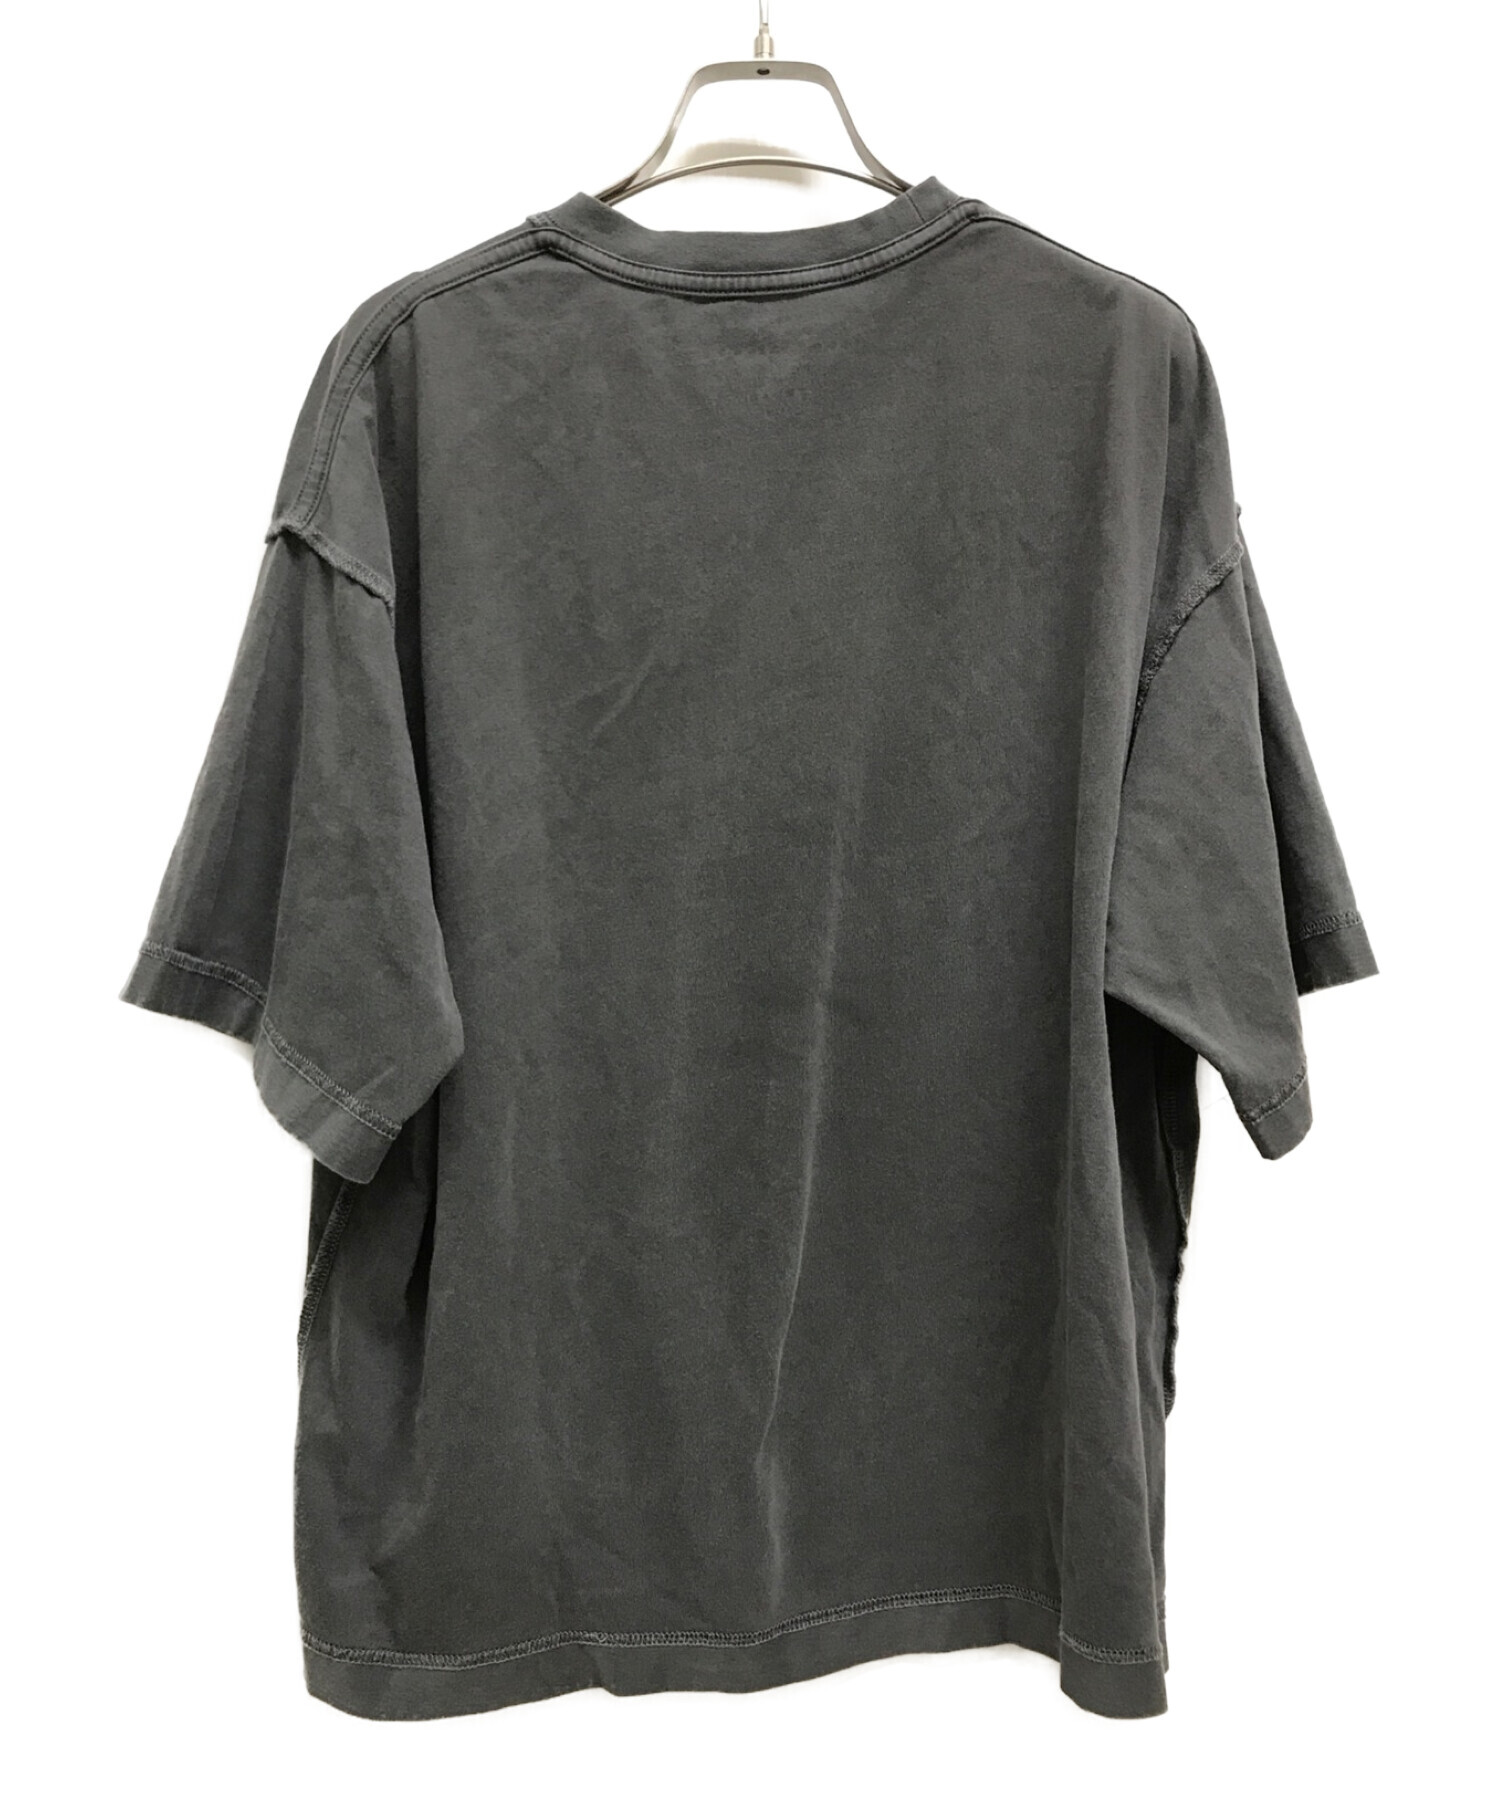 LUKEVICIOUS (ルークヴィシャス) インサイドアウトTシャツ ブラック サイズ:XS/S